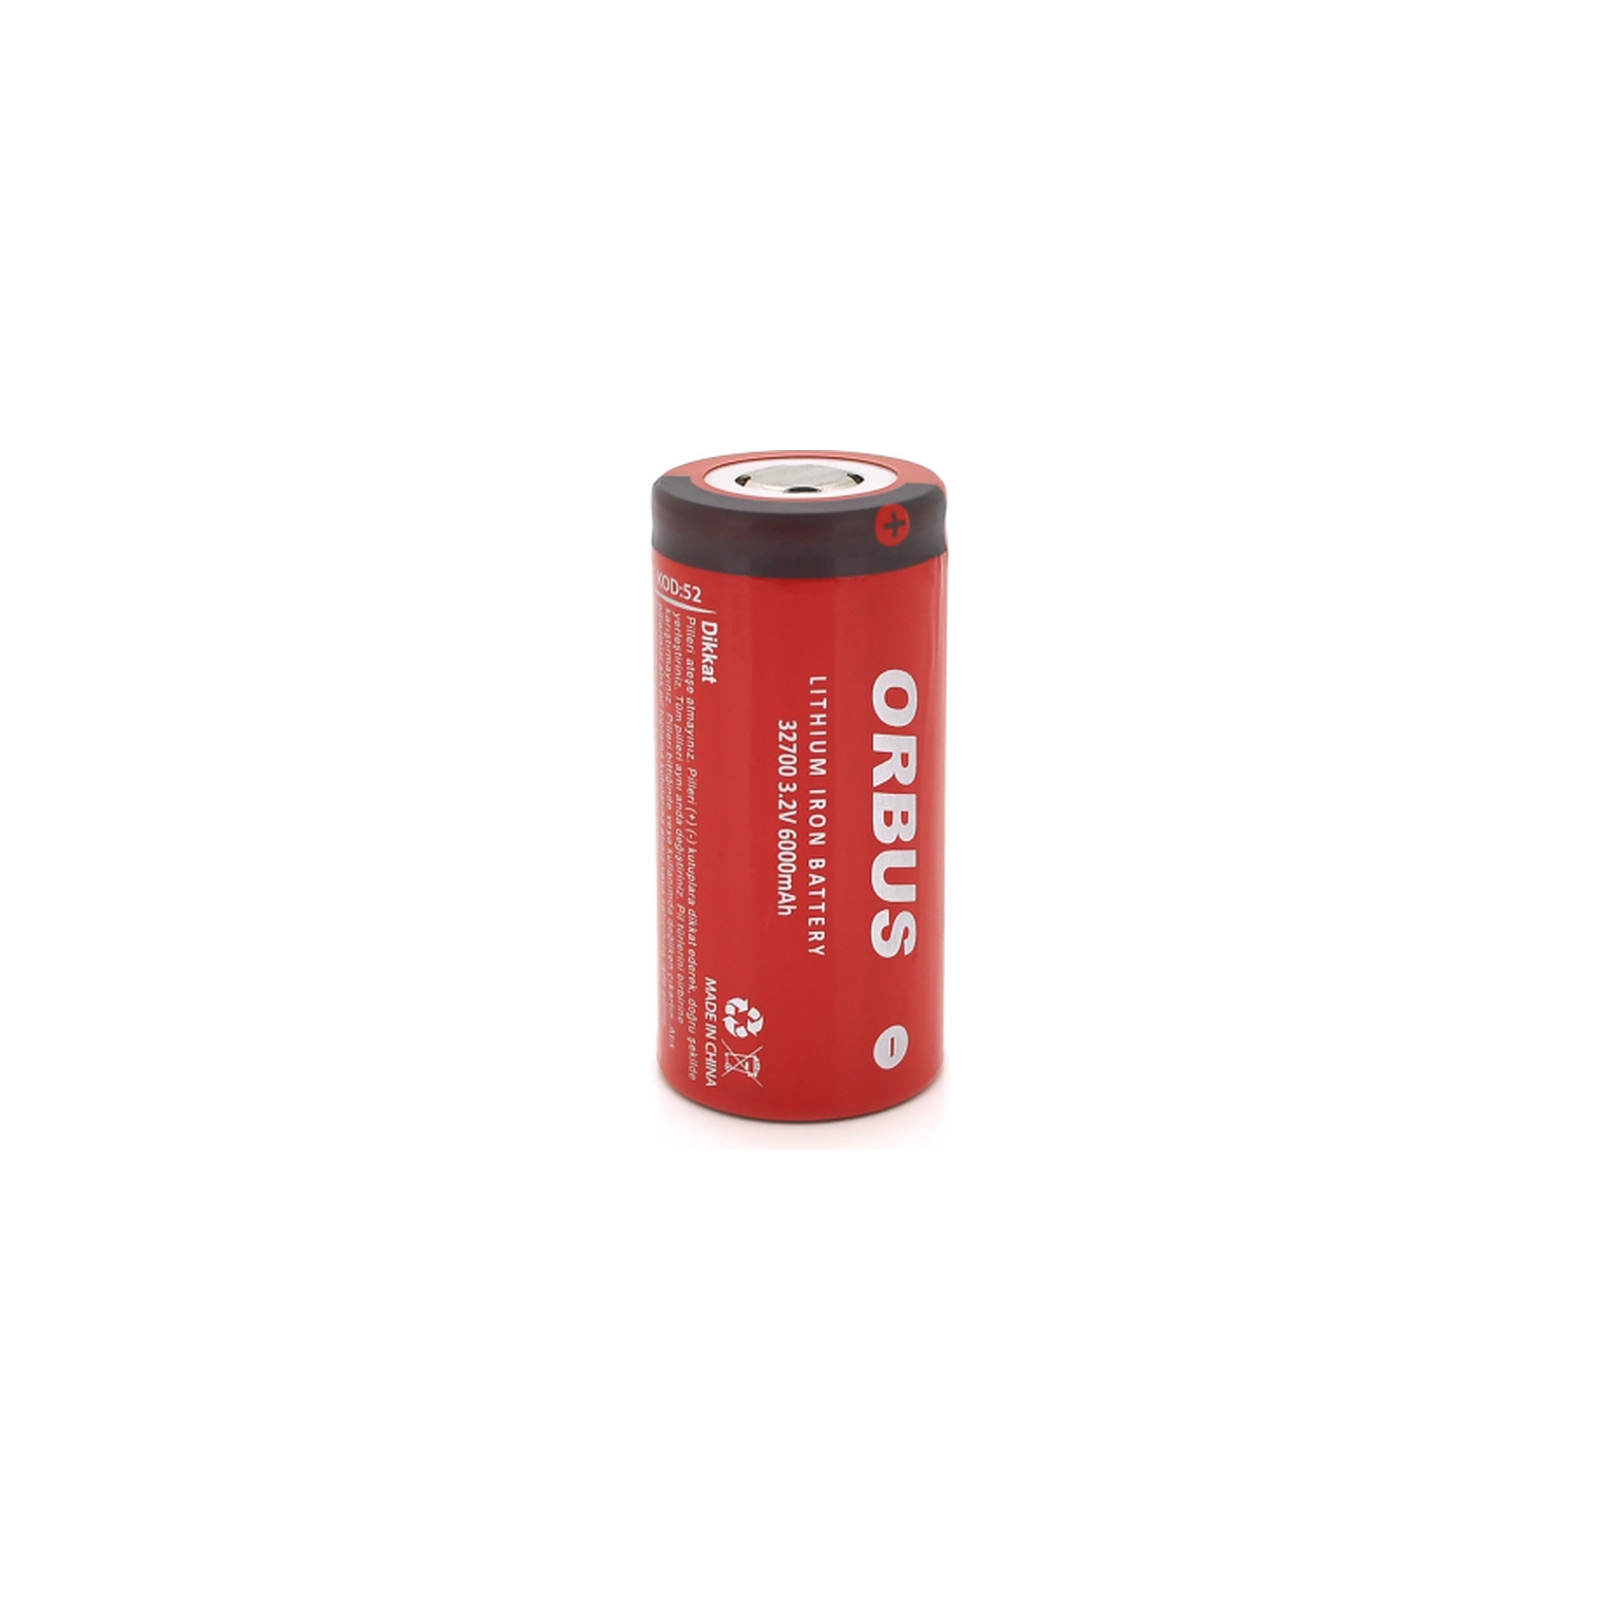 Аккумулятор 32700 LiFEPO4, 6000mAh, 3.2V, RED/GREY Orbus (ORB32700-48G)